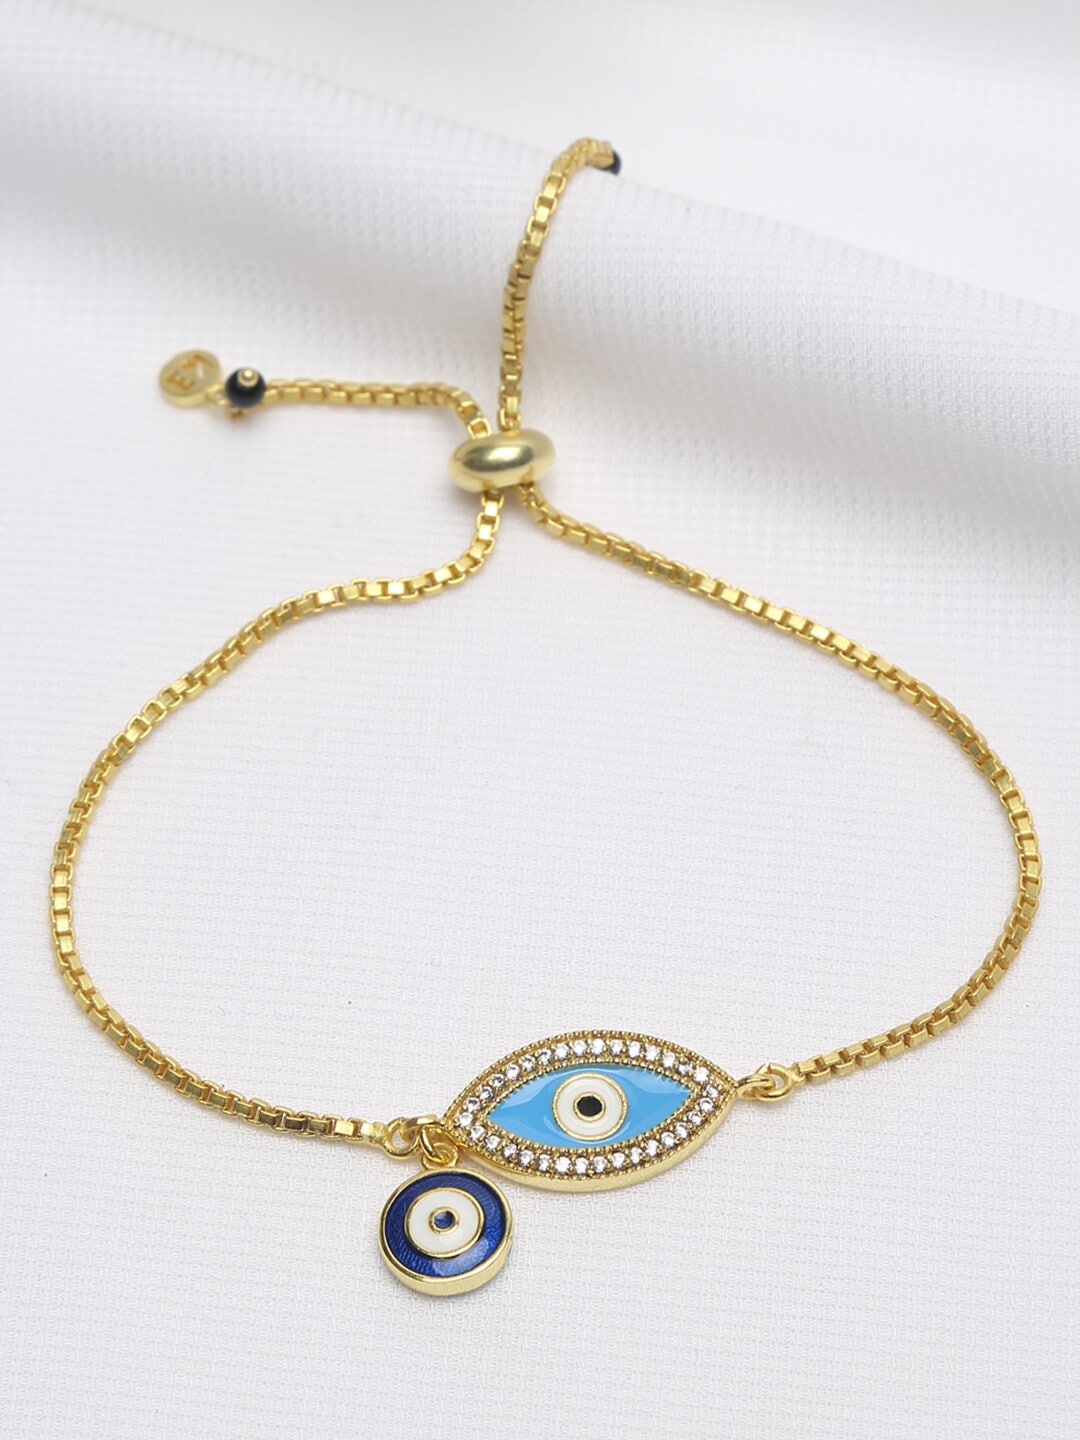 EK BY EKTA KAPOOR Women 22K Gold-Plated Blue & White Stone Studded Evil Eye Bracelet Price in India